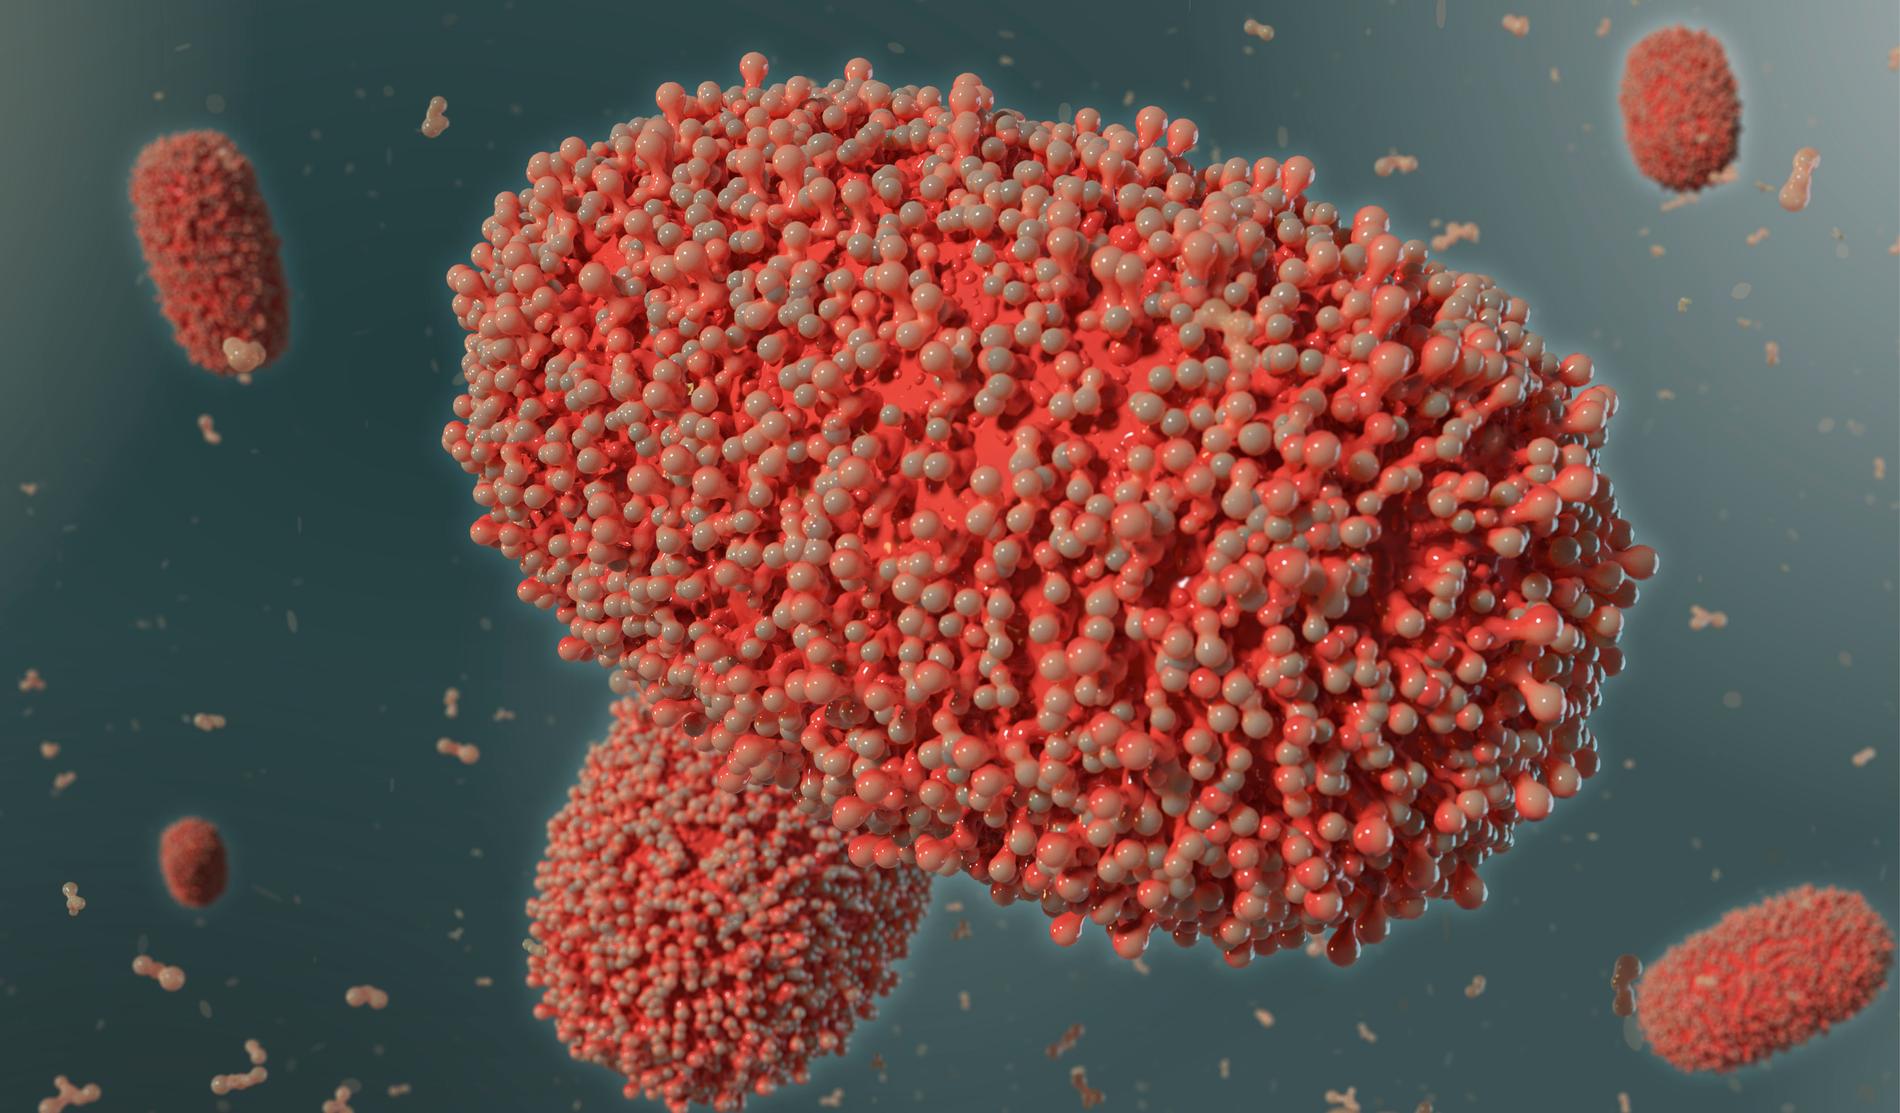 En 3d-illustration av apkoppeviruset.